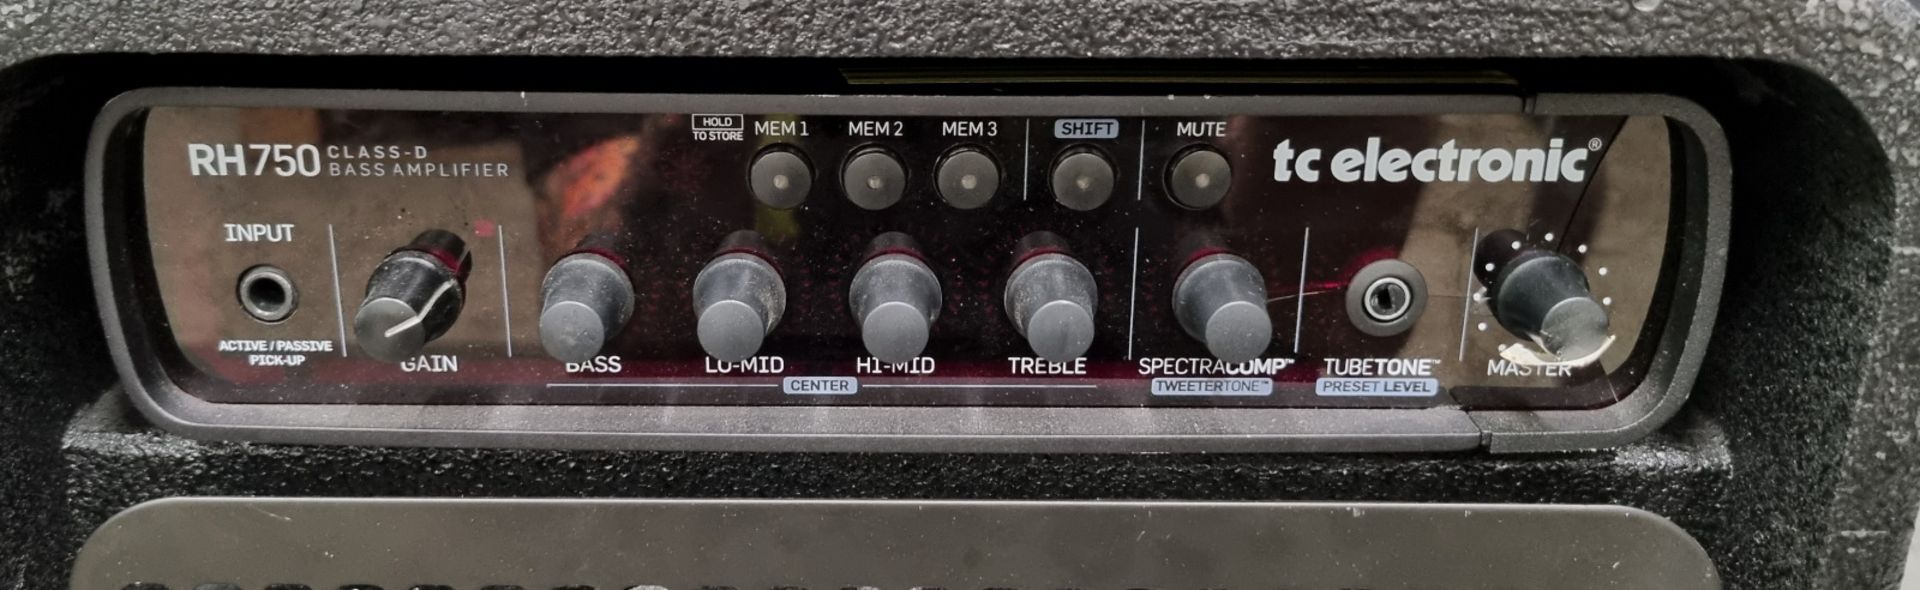 TC Electronic RH750 Class D bass amplifier in swan flight case on castors - Image 4 of 8